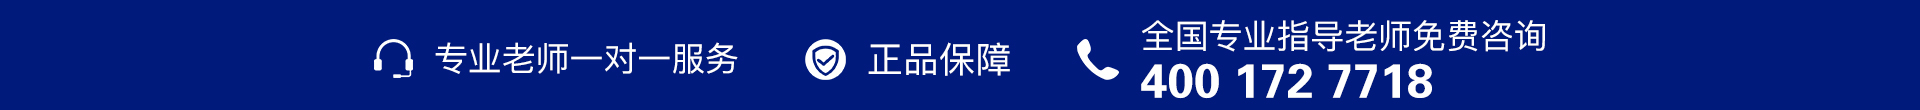 蓝色电话-banner图下方-PC - 副本 (2).jpg